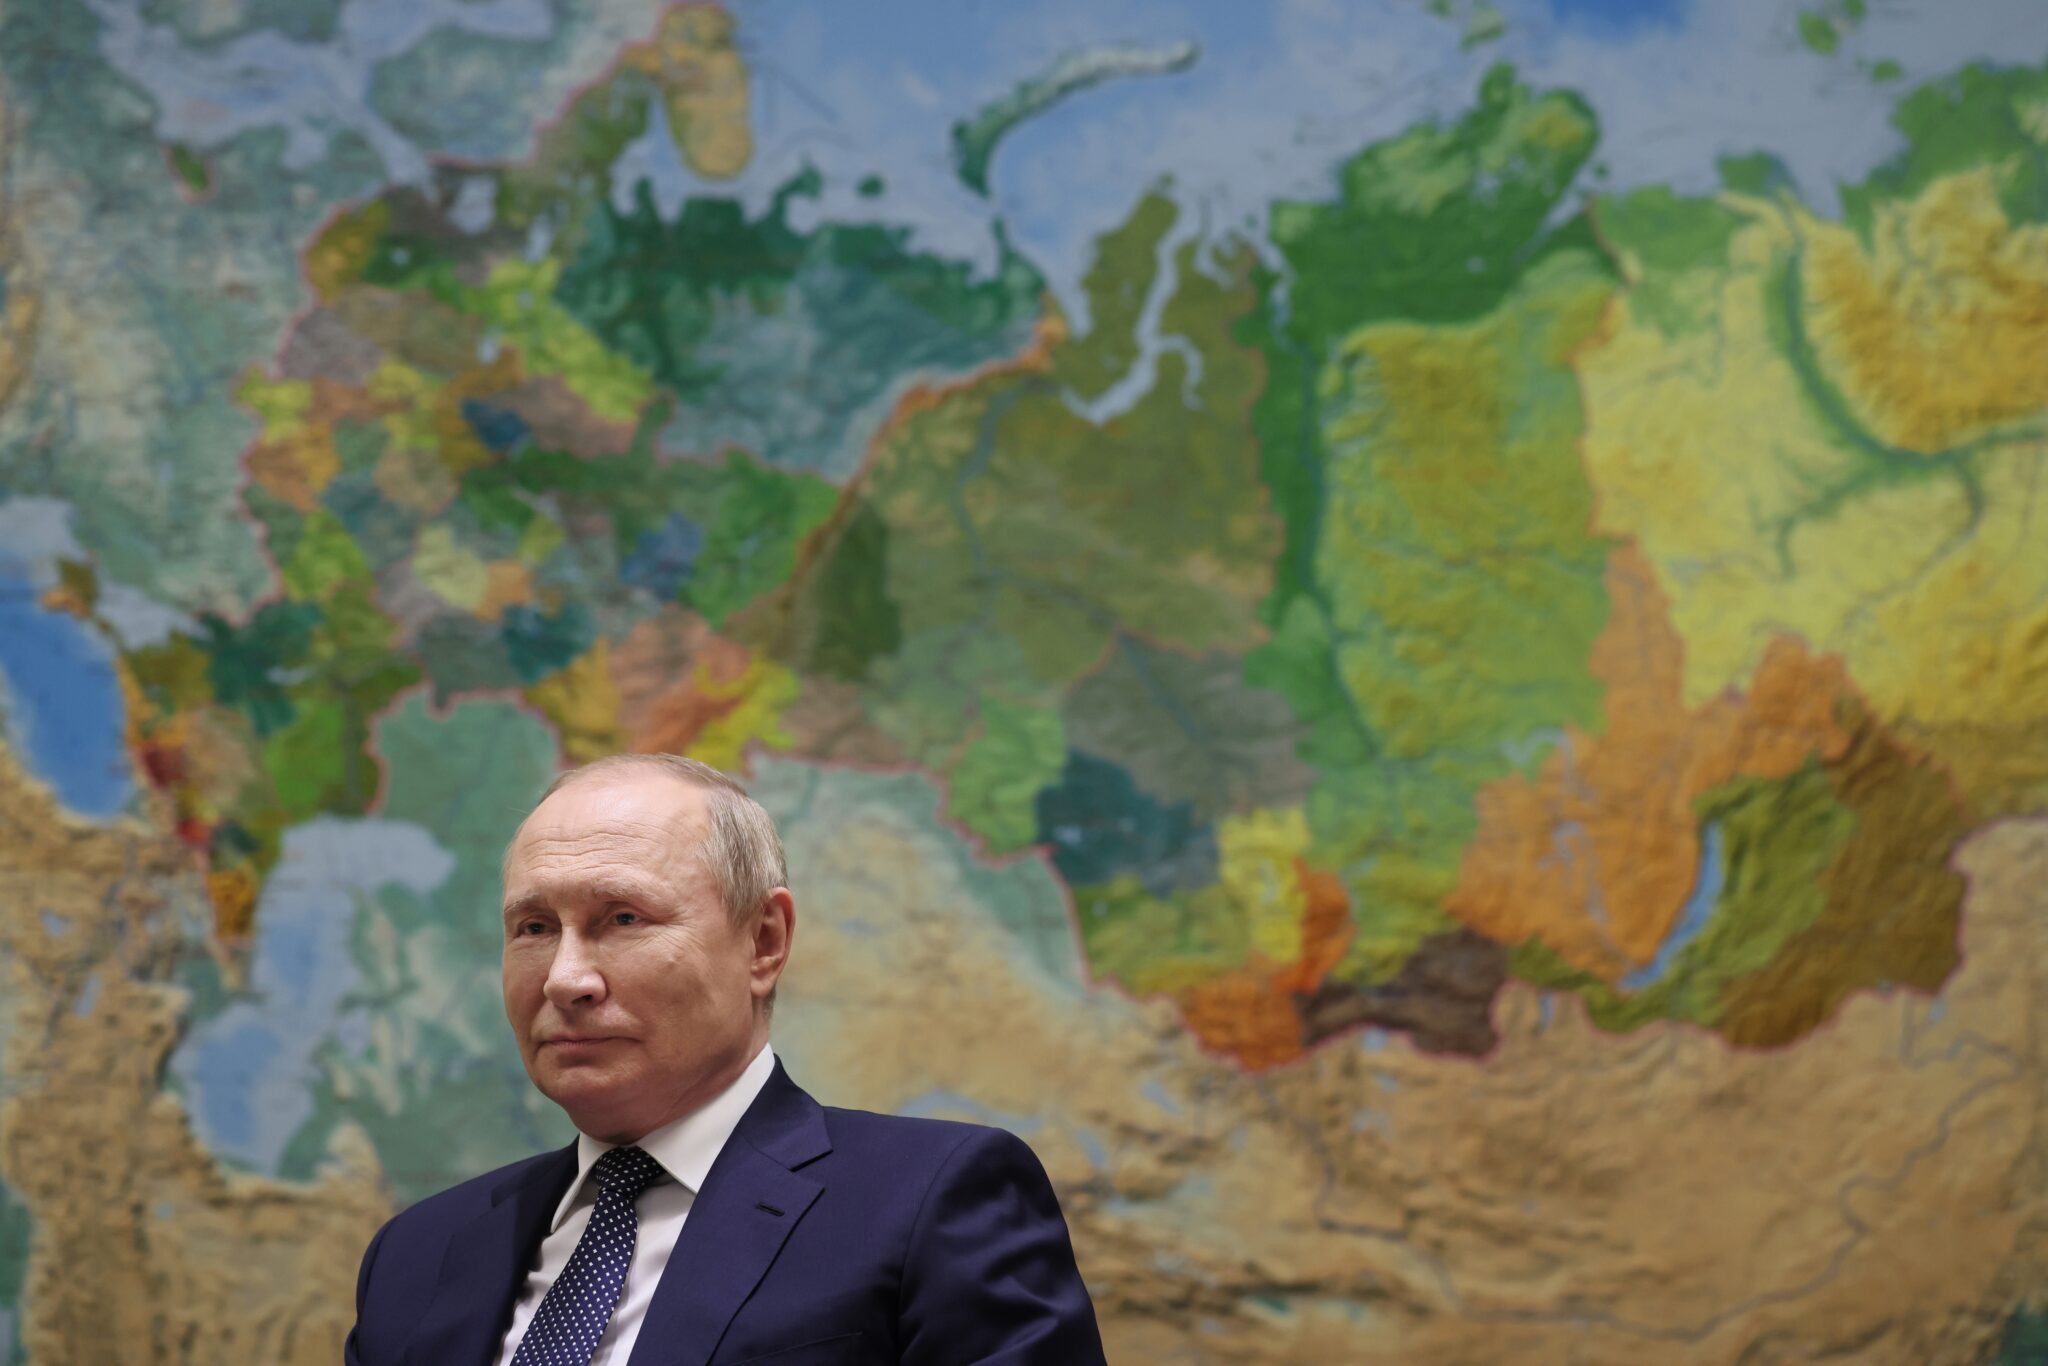 Владимир Путин дает интервью программе "Москва. Кремль. Путин". 3 июня 2022 года. Фото Mikhail Klimentyev, Sputnik, Kremlin Pool Photo via AP/Scanpix/LETA